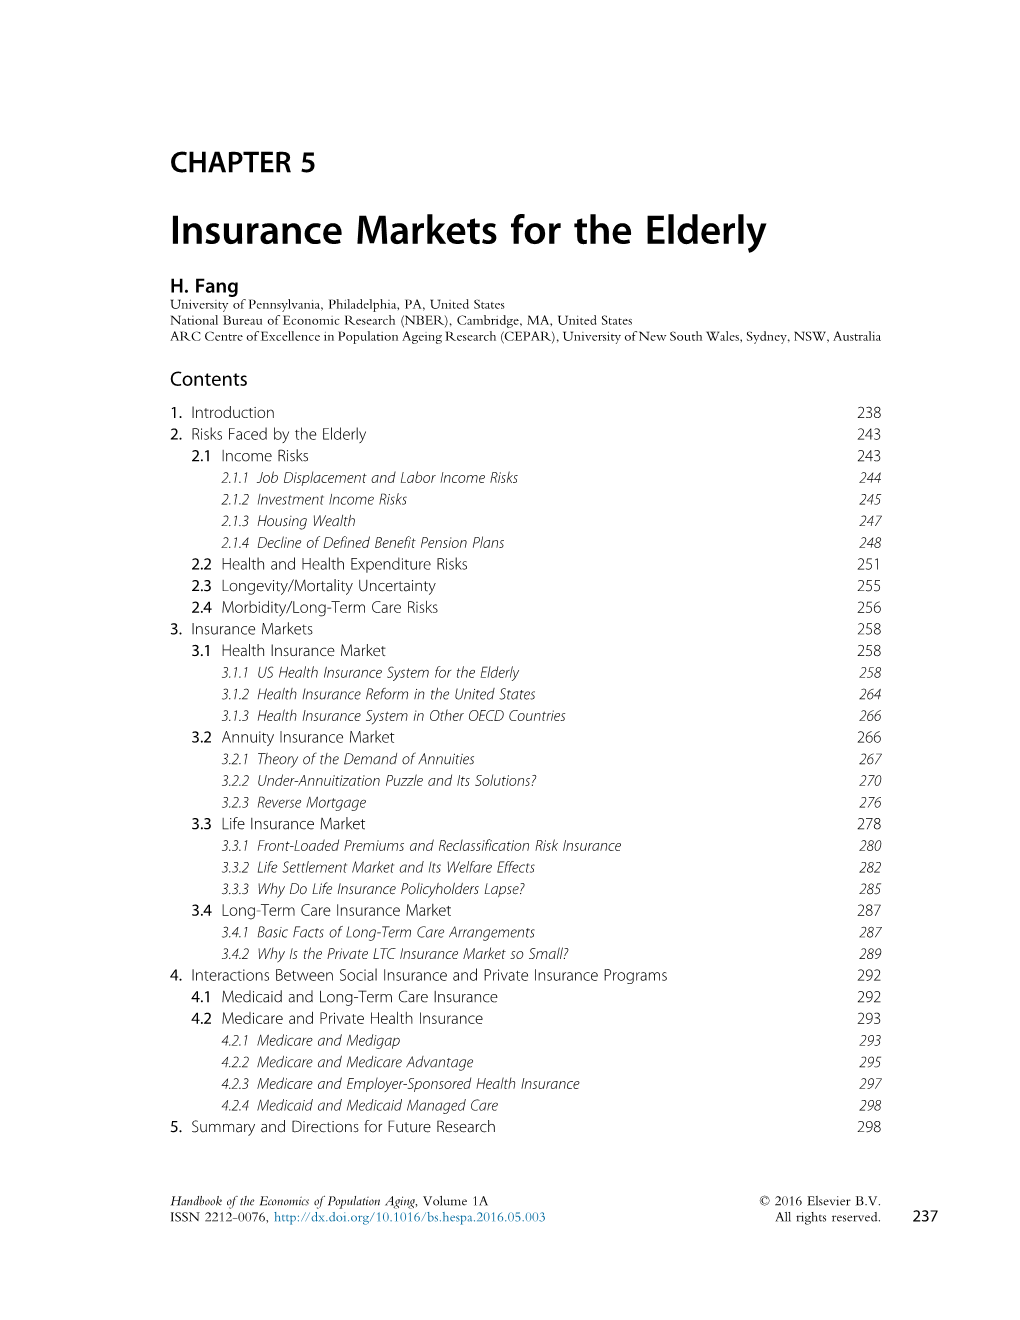 Insurance Markets for the Elderly